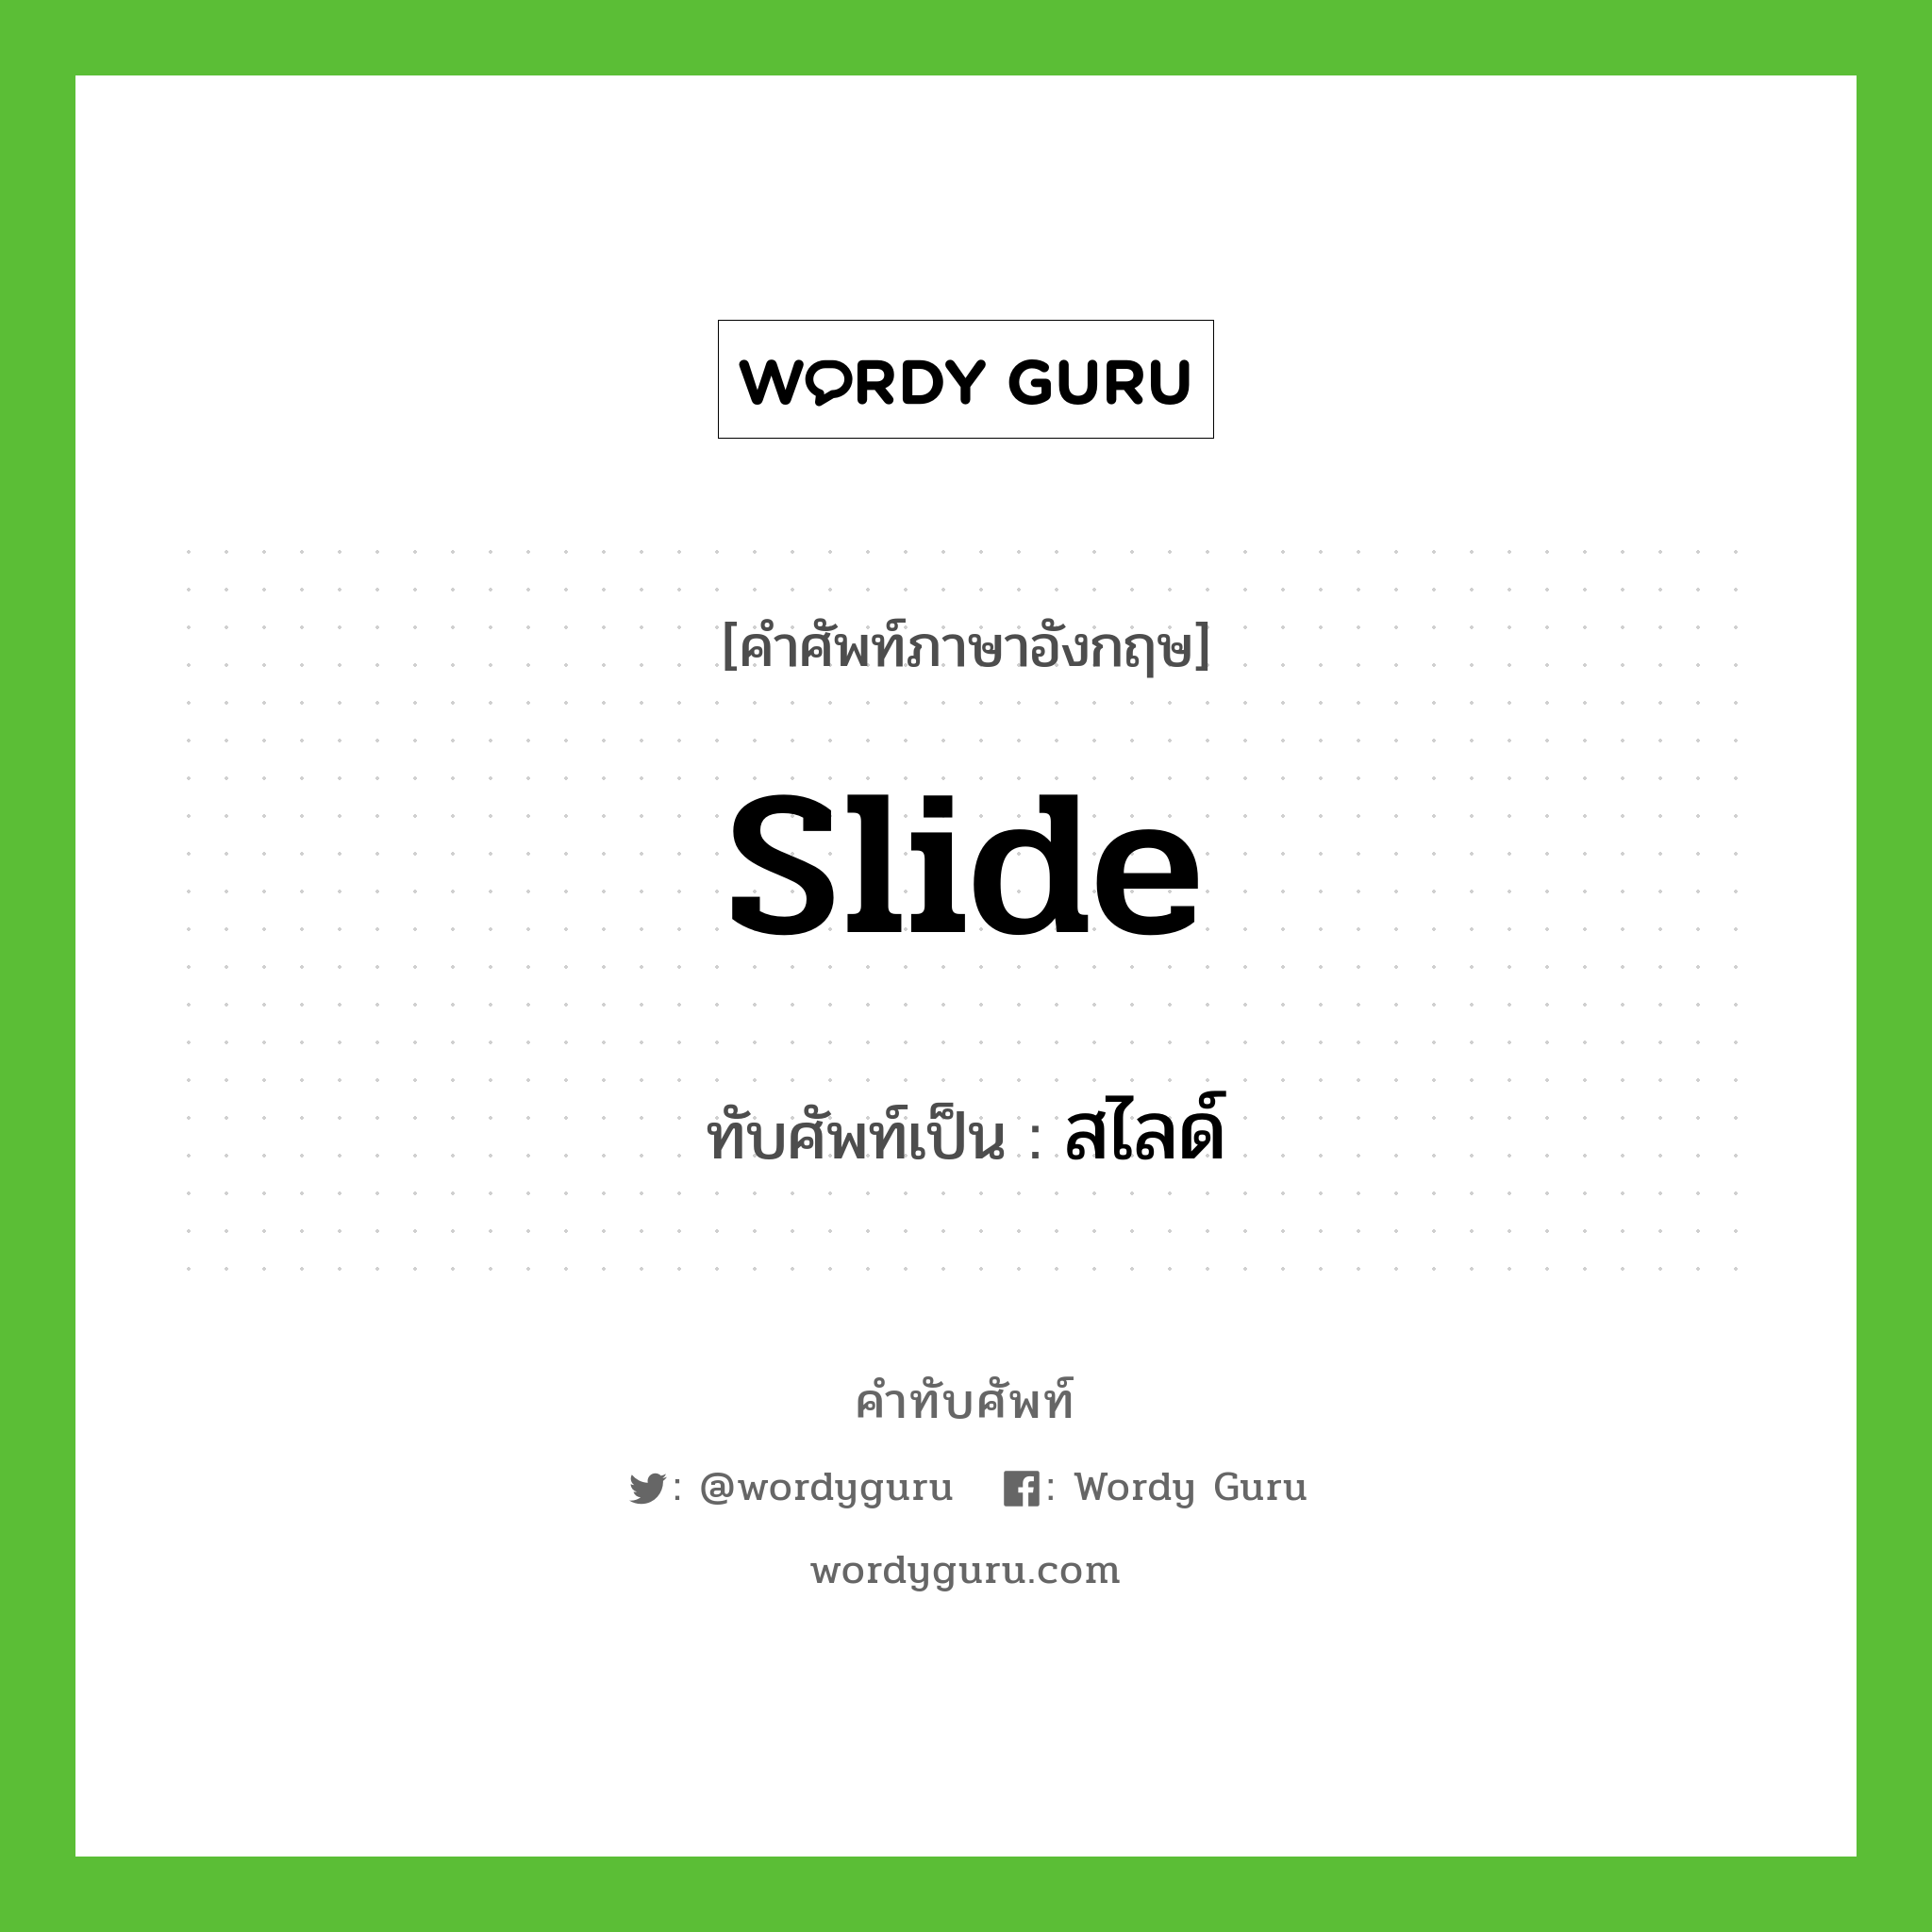 slide เขียนเป็นคำไทยว่าอะไร?, คำศัพท์ภาษาอังกฤษ slide ทับศัพท์เป็น สไลด์